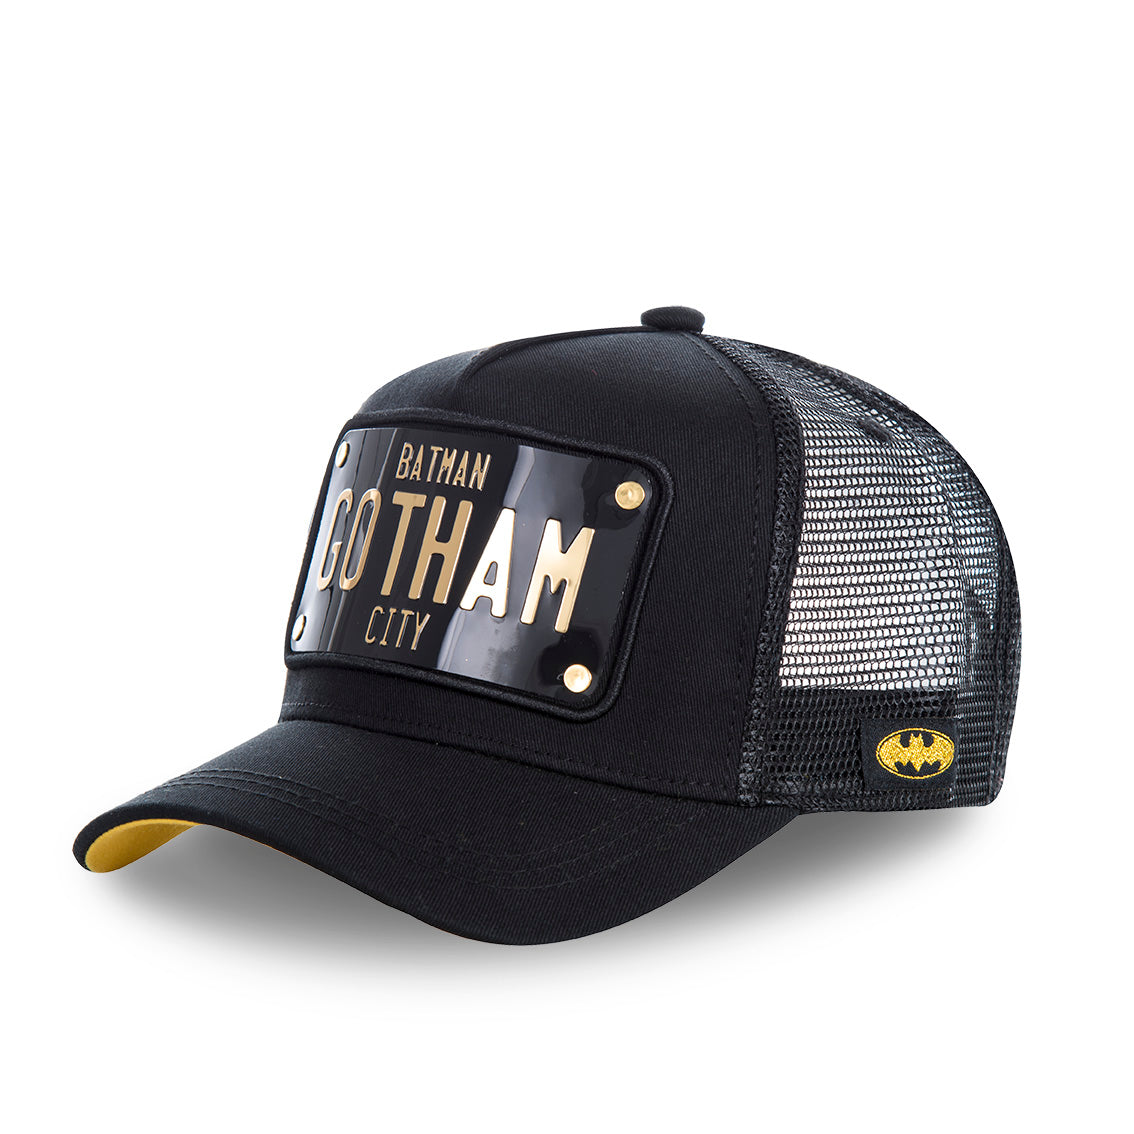 DC COMICS BATMAN BLACK CAP